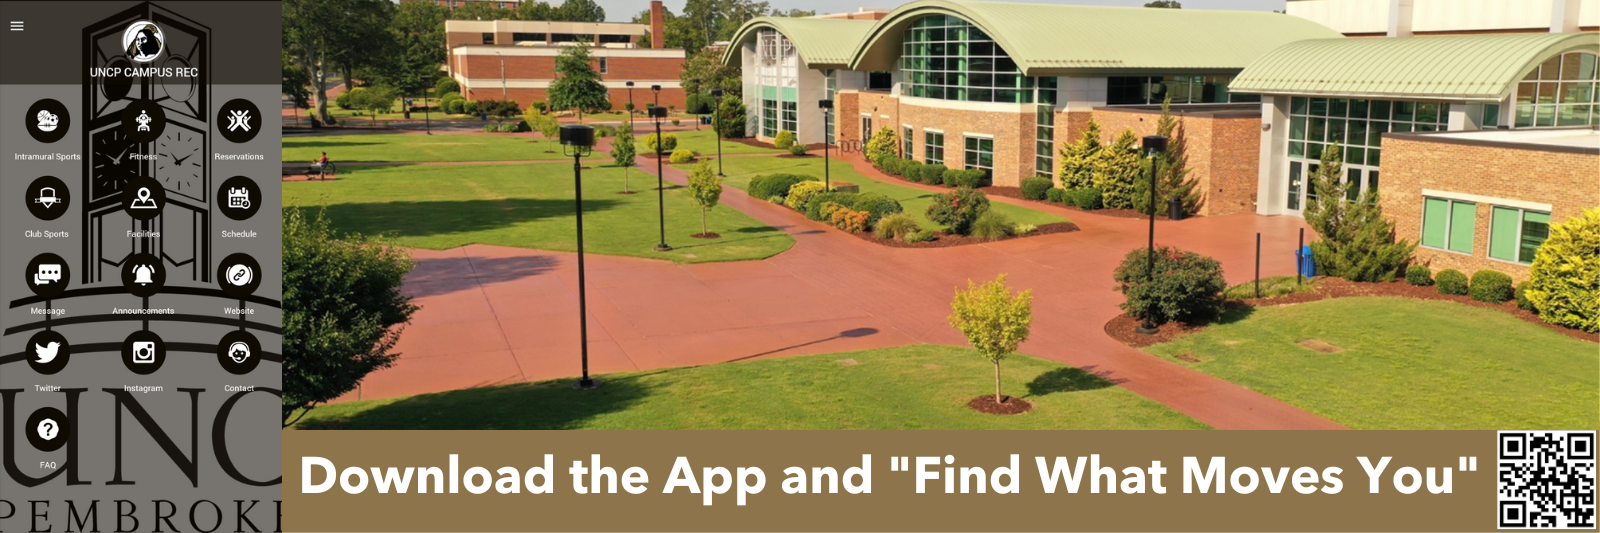 Jones Center with Campus Rec App